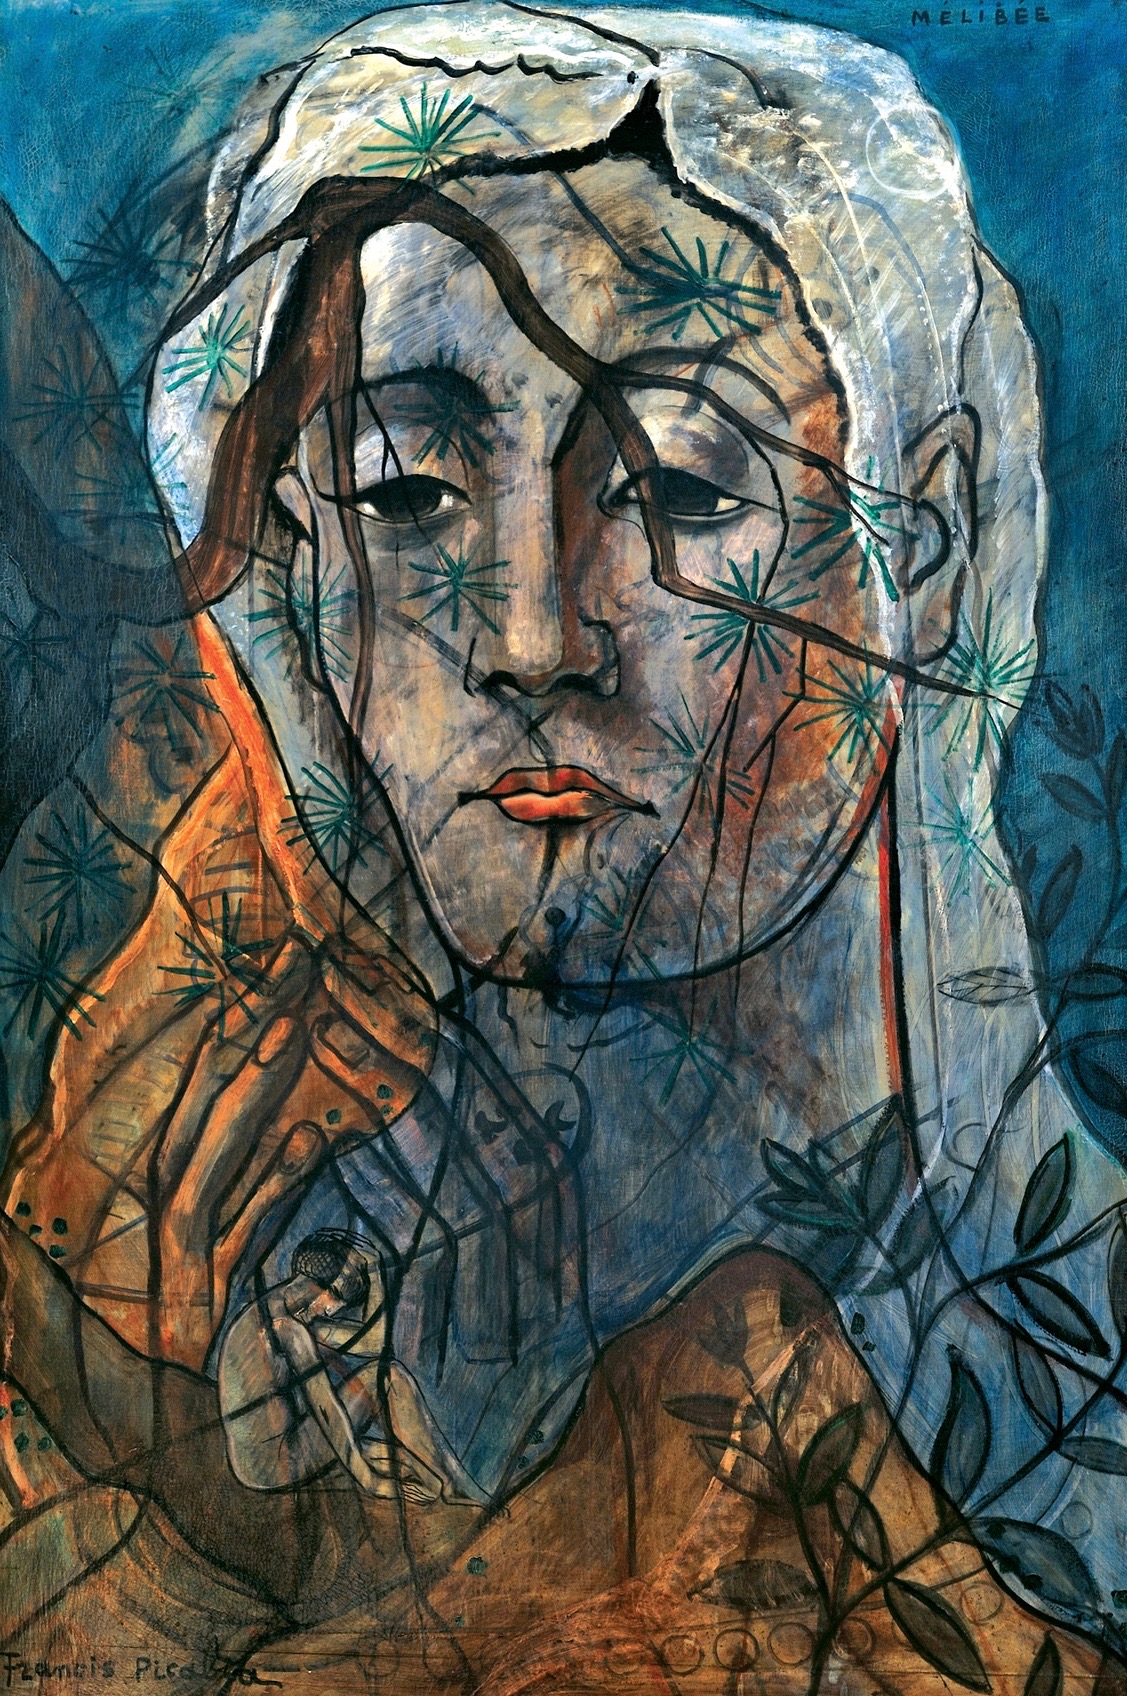 « Mélibée », 1931. Huile sur toile réalisée par Francis Picabia